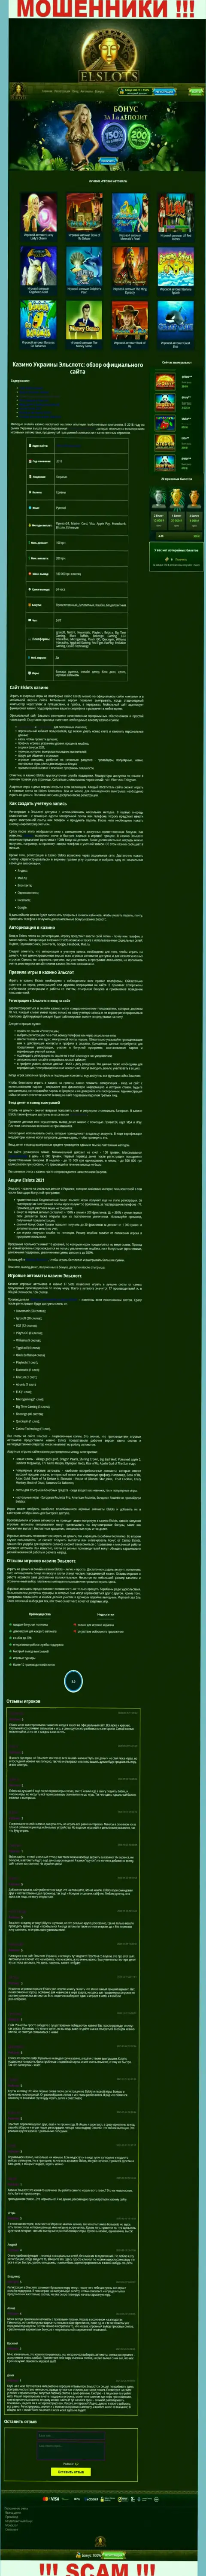 Внешний вид официальной web странички противозаконно действующей конторы Ел Слотс